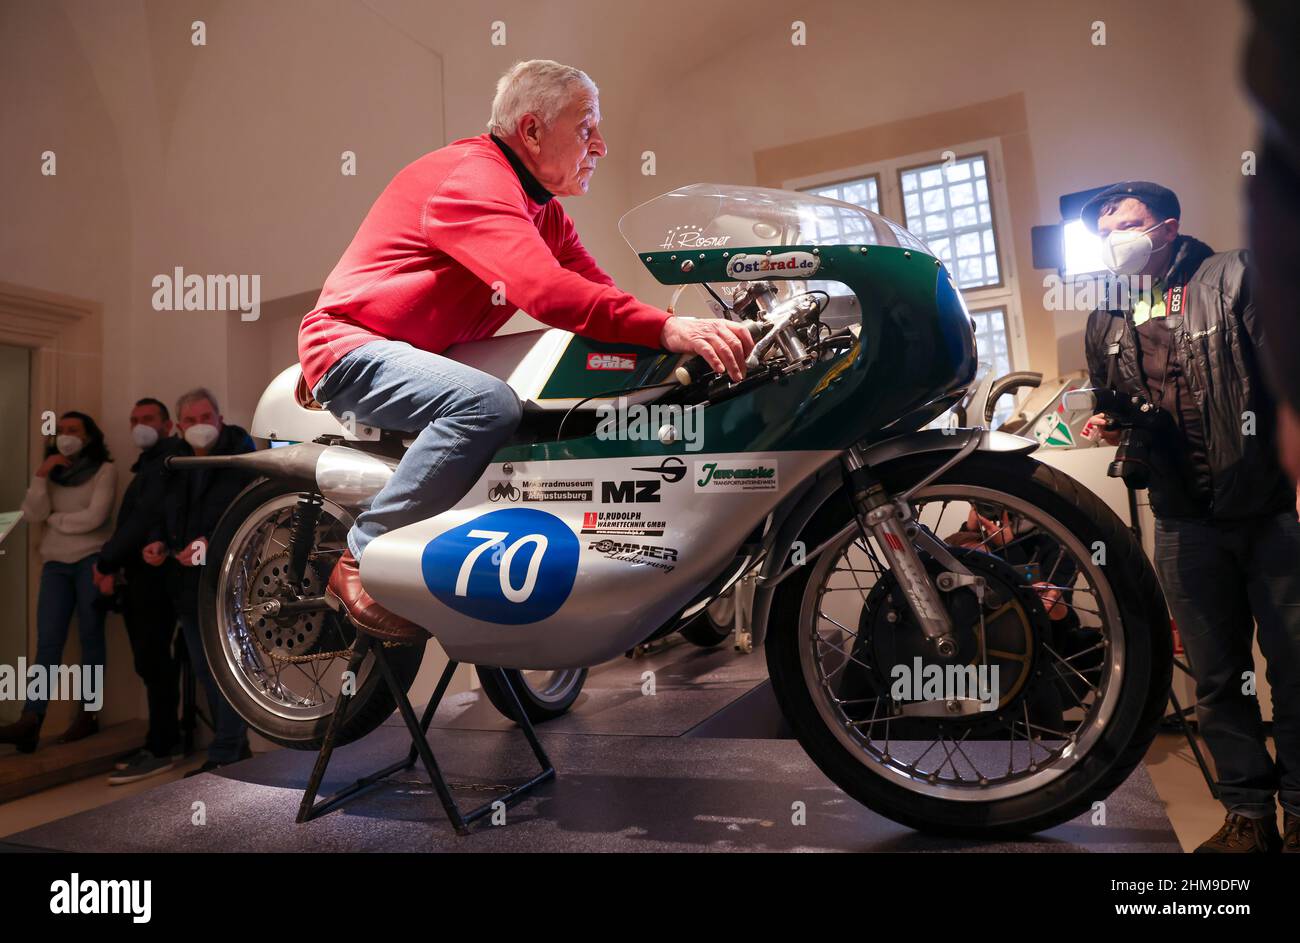 08 février 2022, Saxe, Augustusburg: Heinz Rosner, ancien coureur de moto  et pilote d'usine MZ, siège sur le MZ 300 il a roulé à la troisième place  dans le championnat du monde